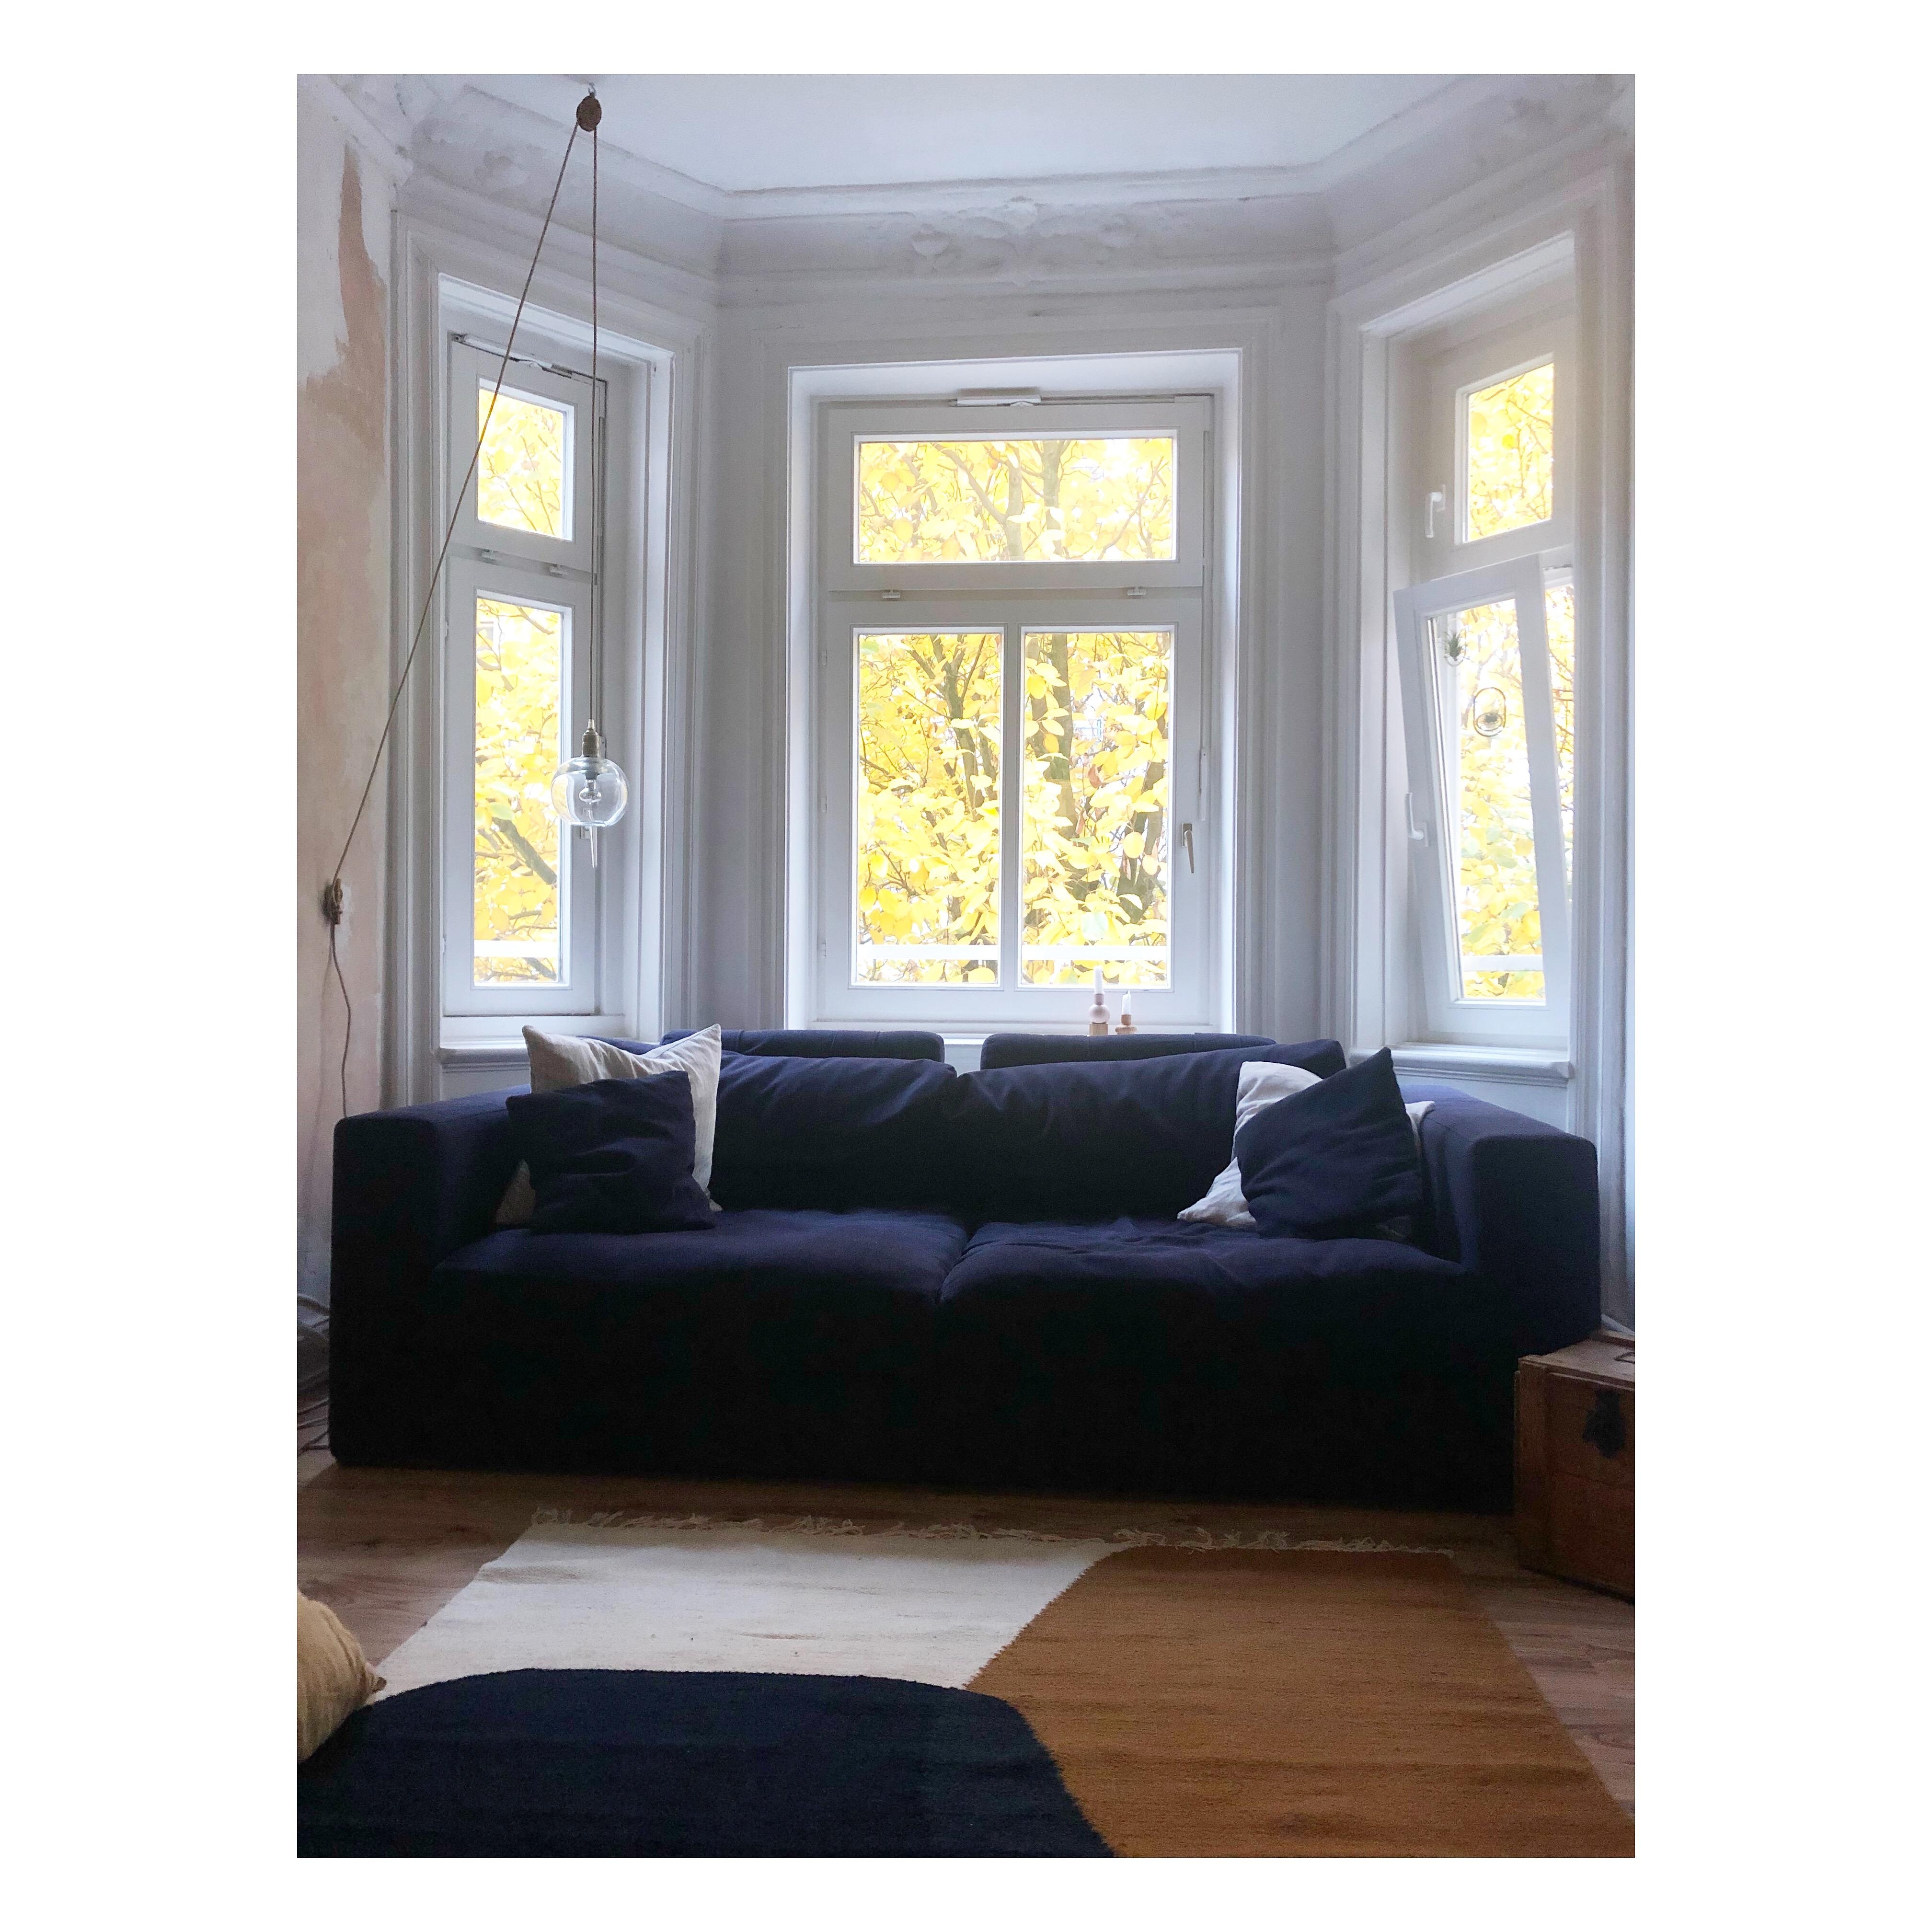 #lieblingsplatz
#scandinaviandesign
#interior
